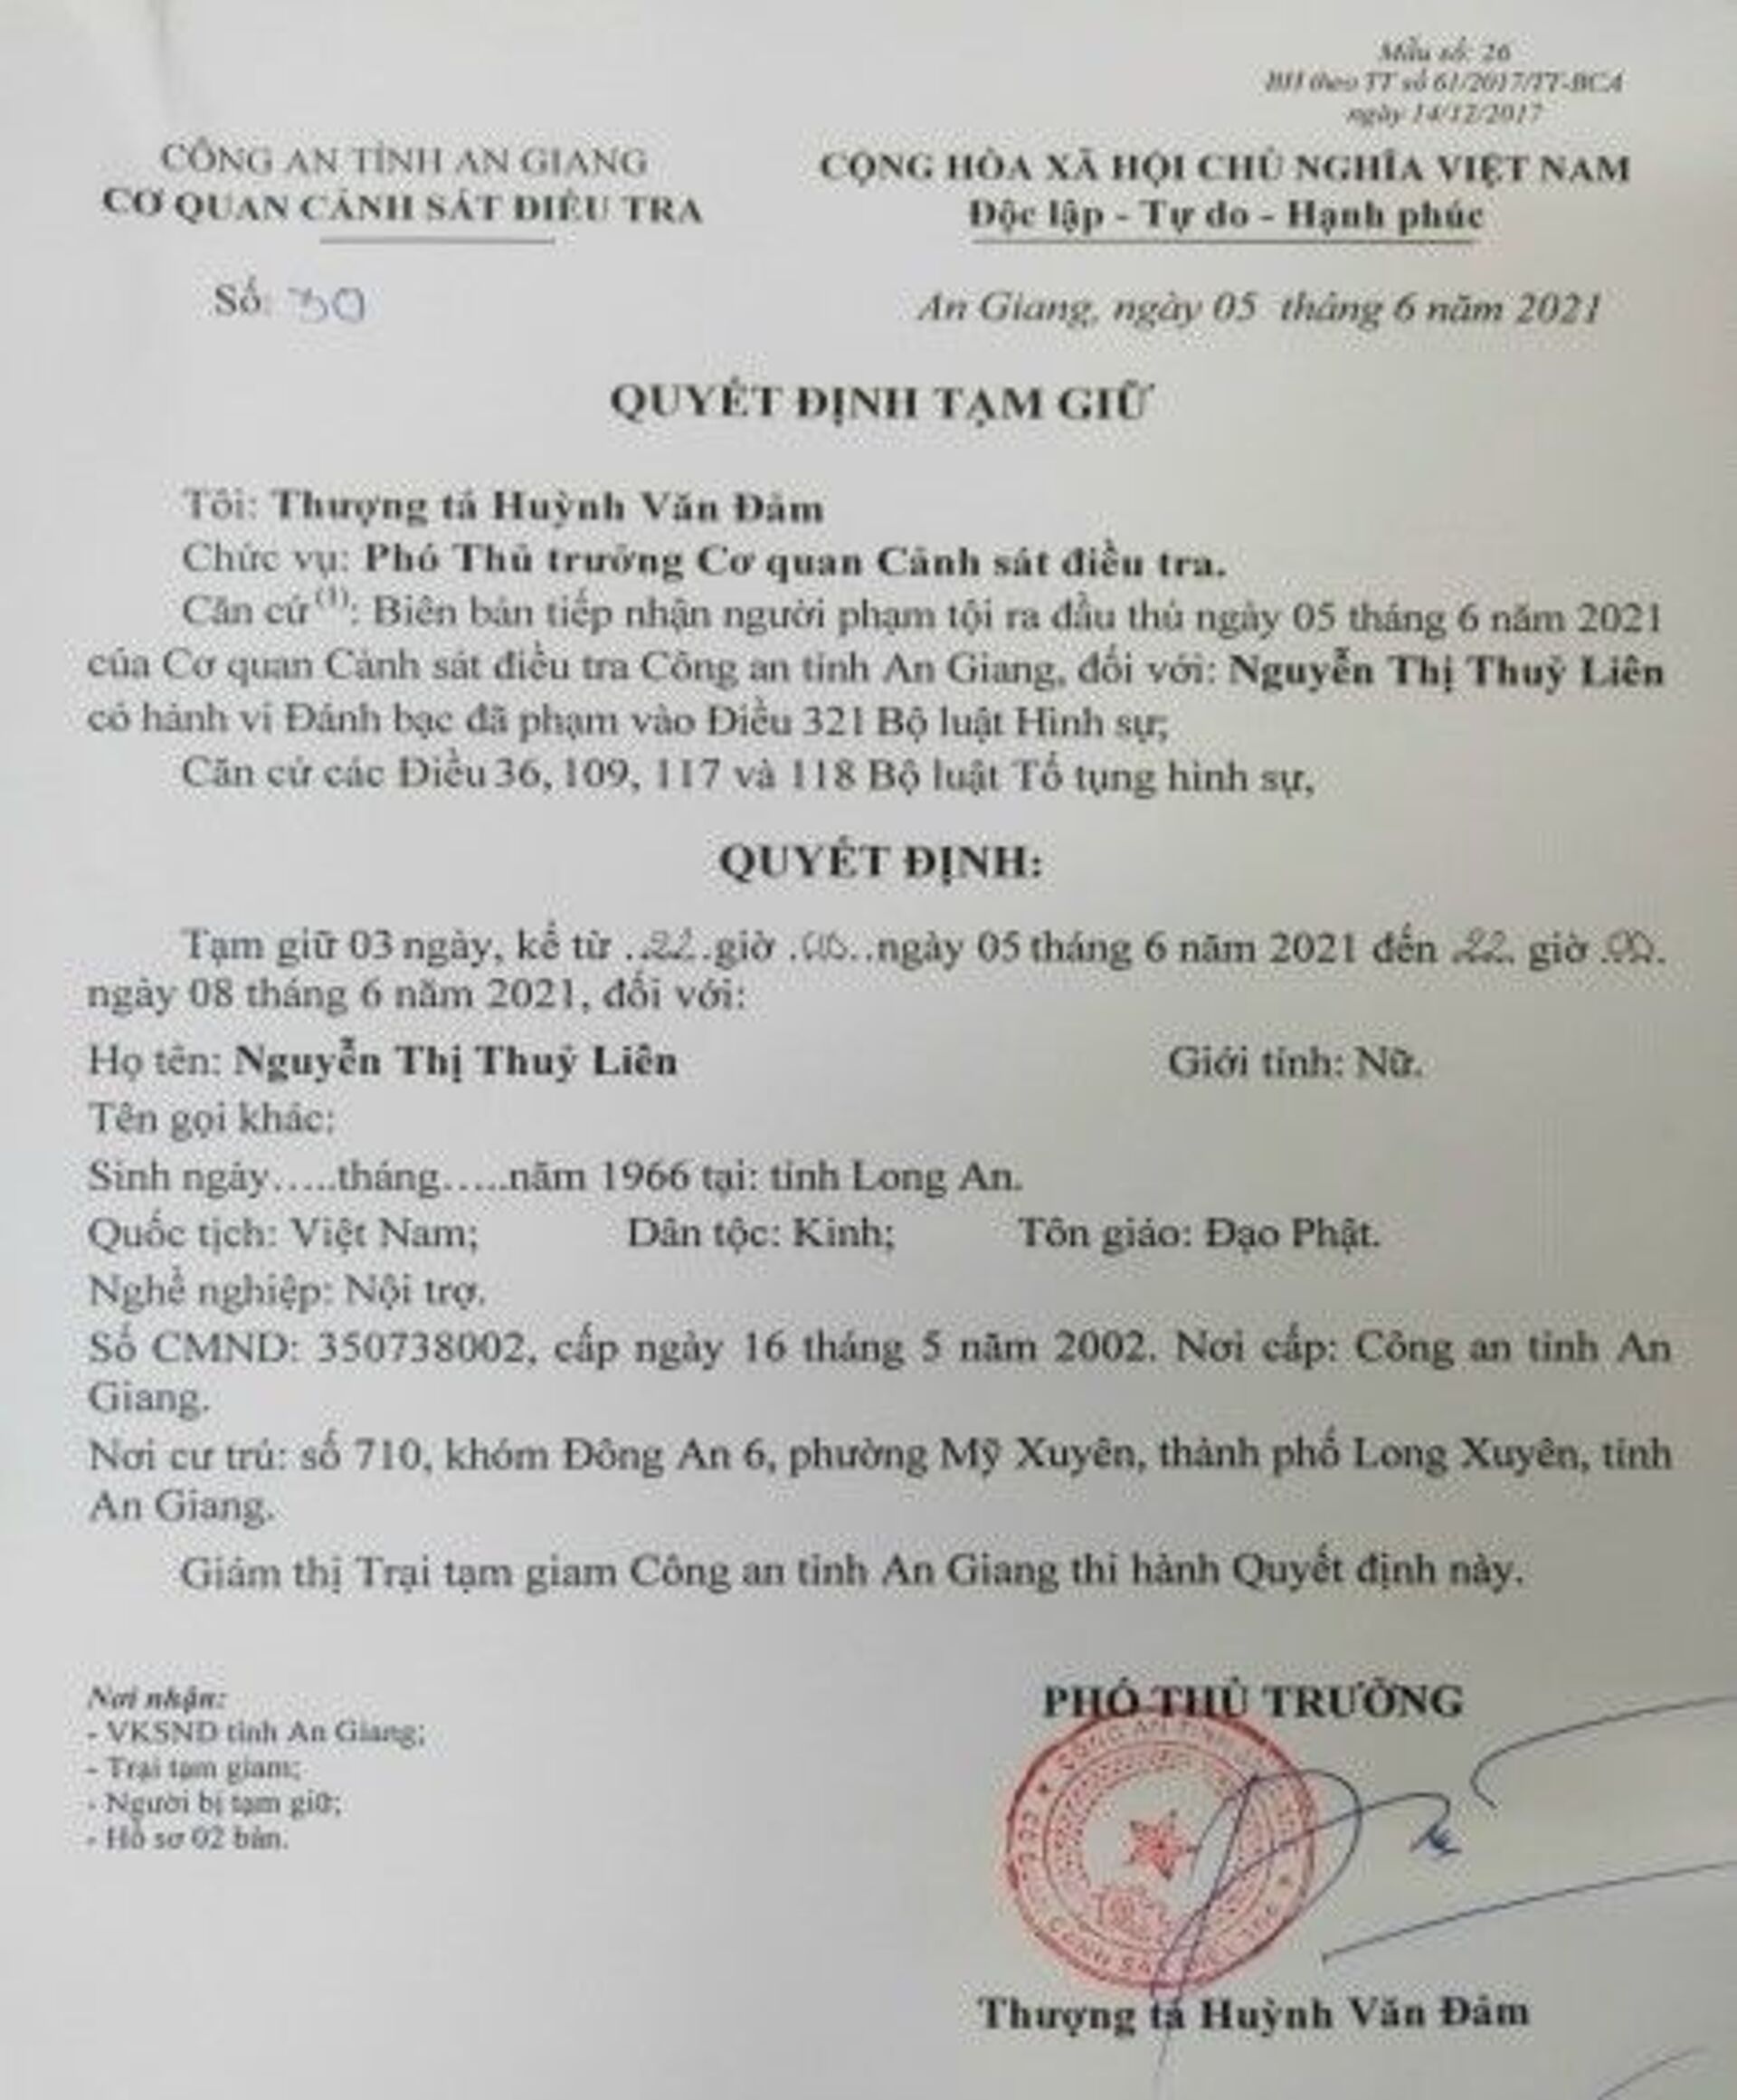 Đại tá lên tiếng về quy mô đường dây cờ bạc vài trăm tỷ ở An Giang - Sputnik Việt Nam, 1920, 07.06.2021